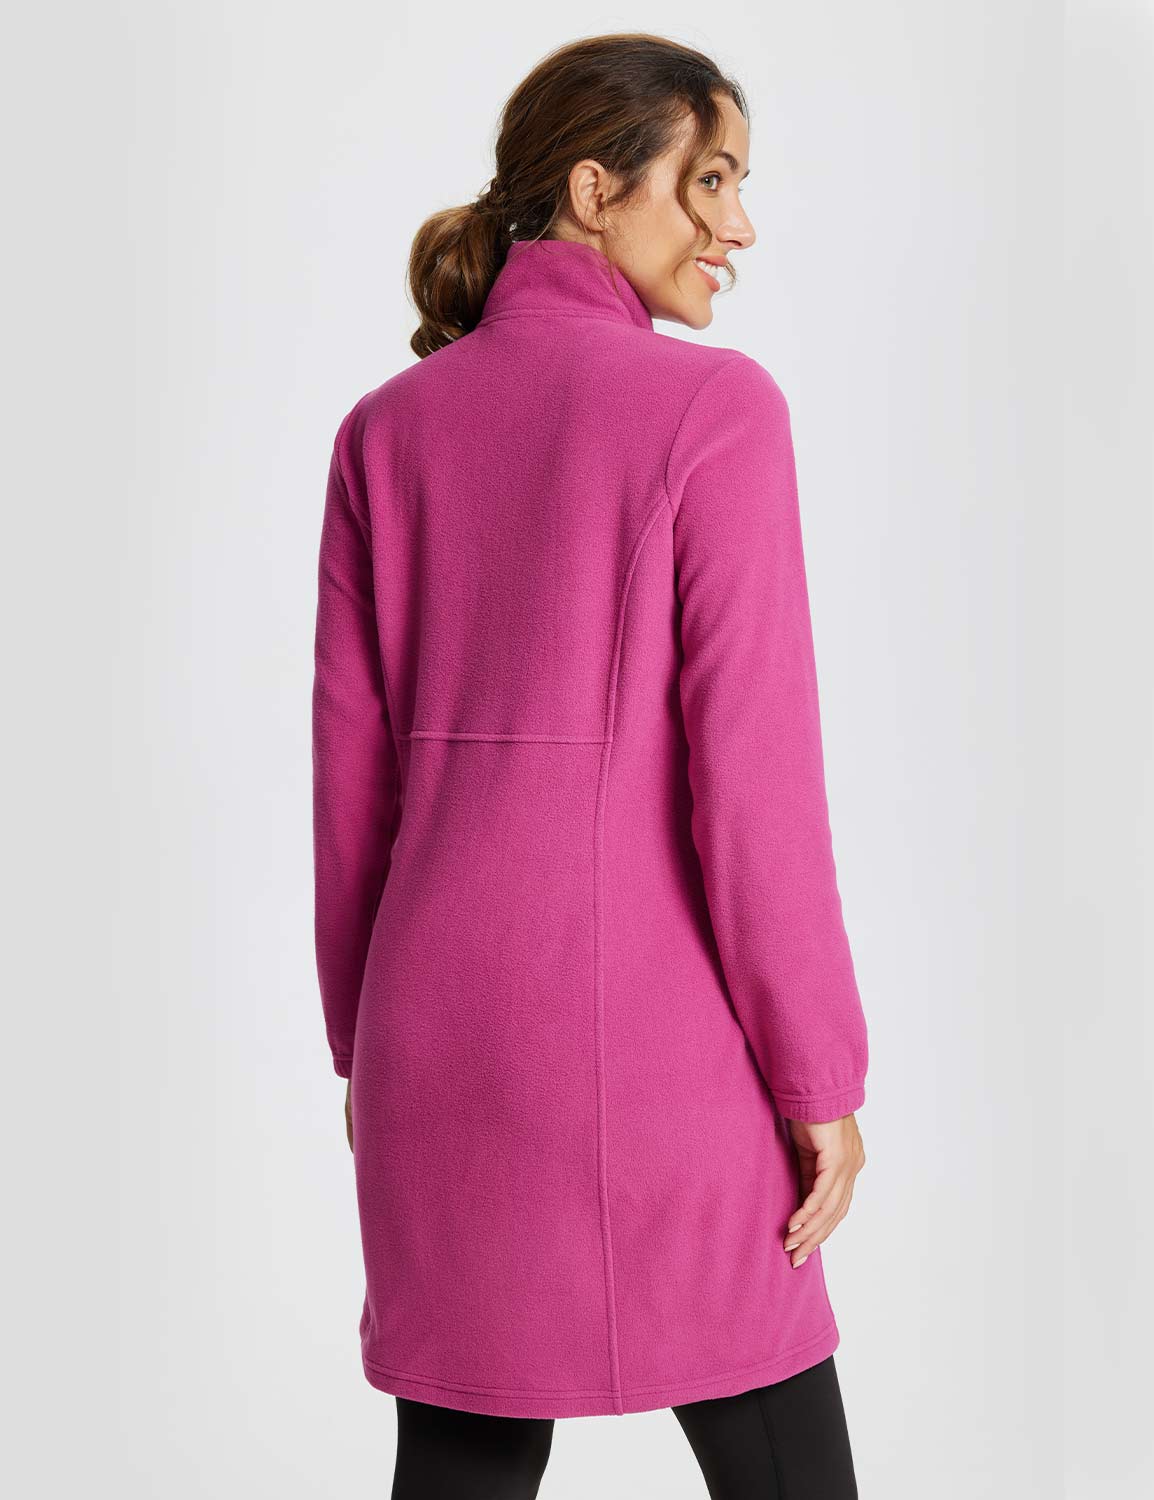 Baleaf Women's Long-Sleeve Quarter Zip Thermal Dress dga069 Violet Rose Back